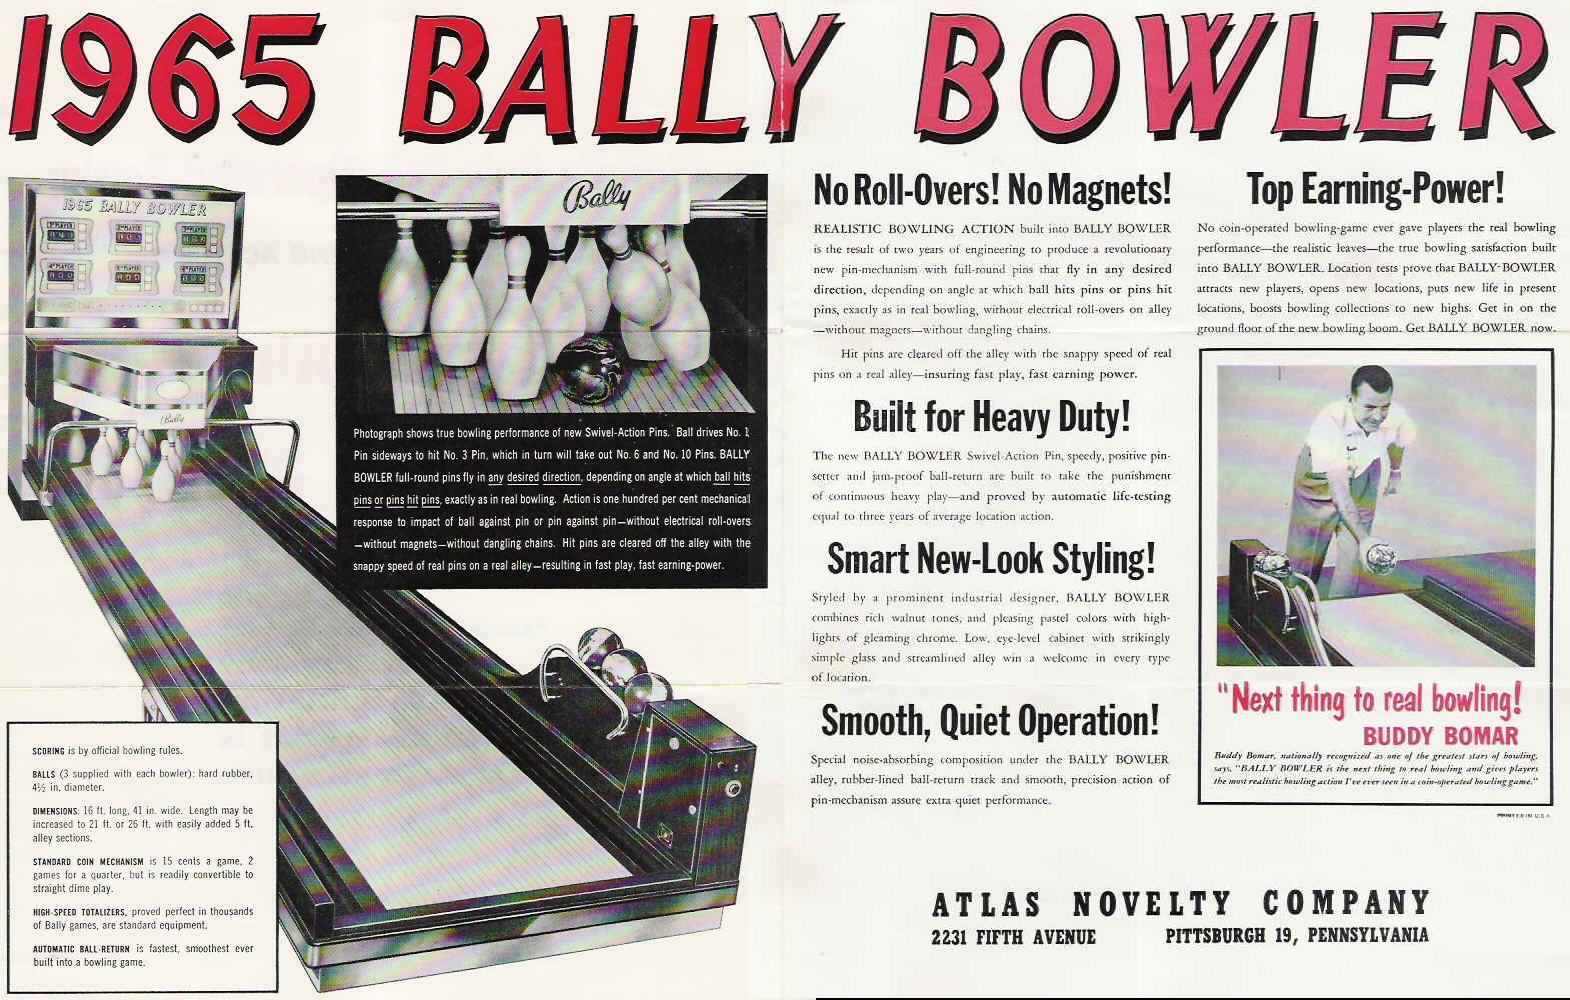 Description: 1965 Bally Bowler (bowling alley), Bally, 1965, swivel-action pins...